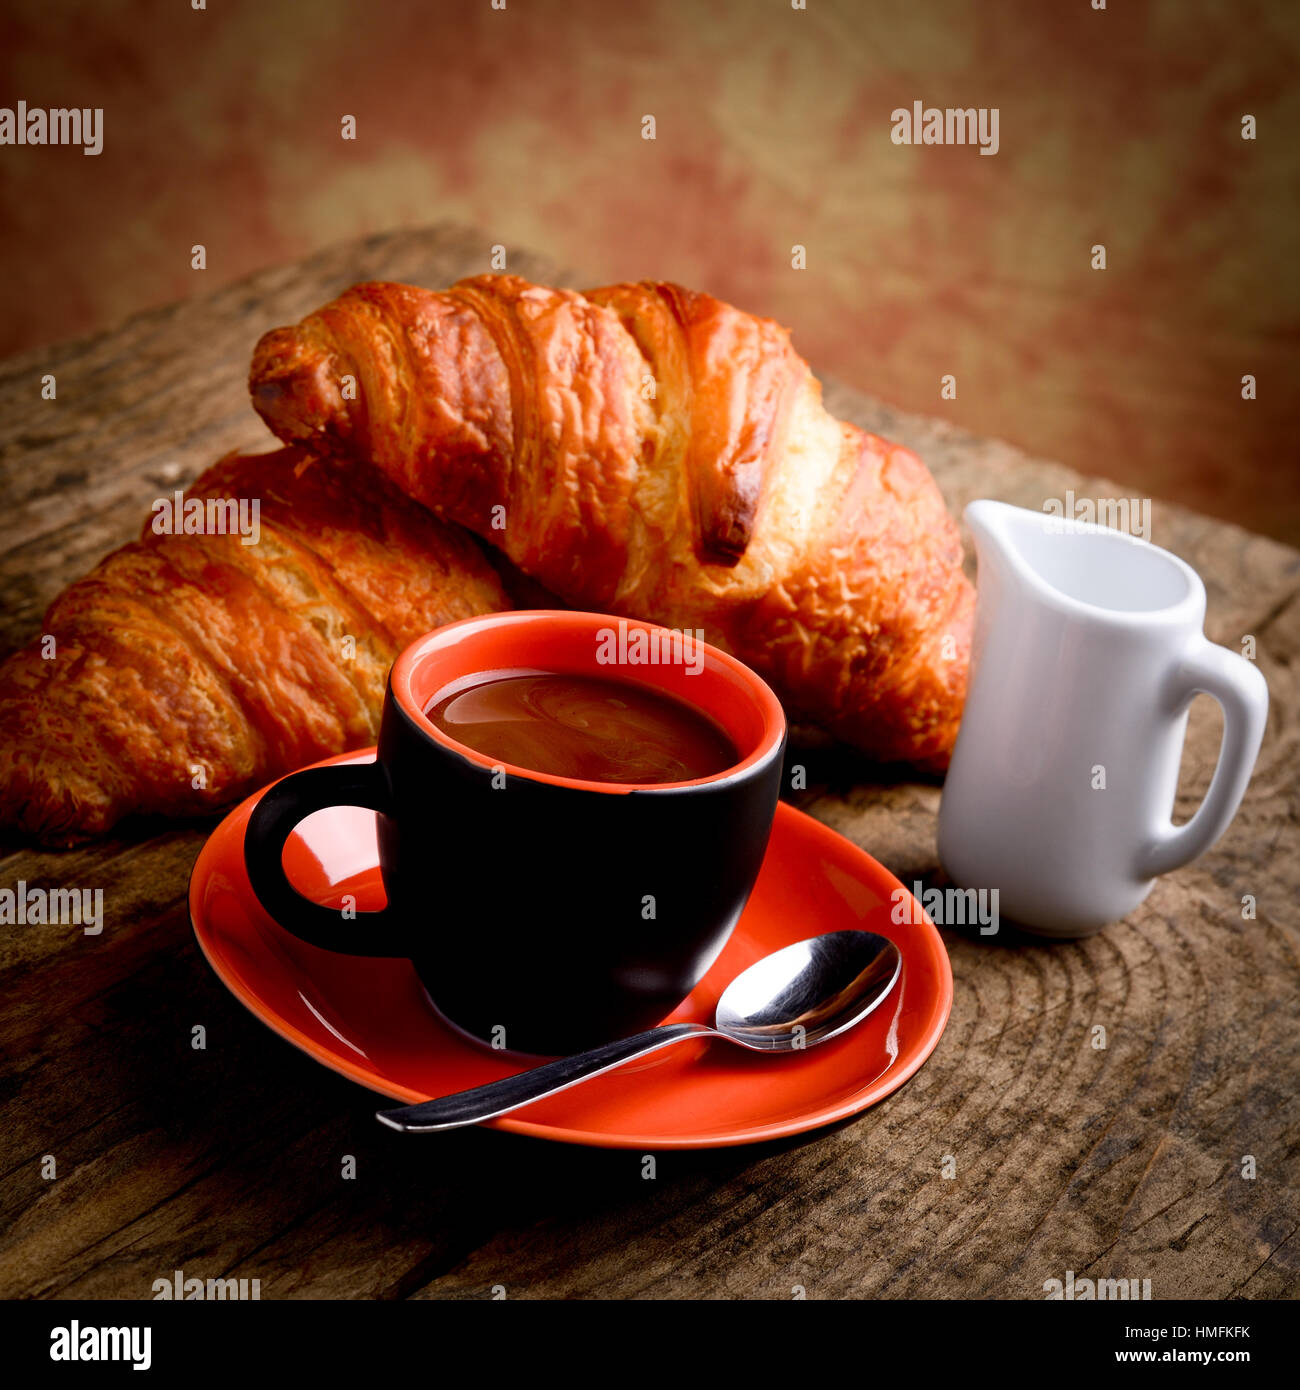 italian style breakfast Stock Photo